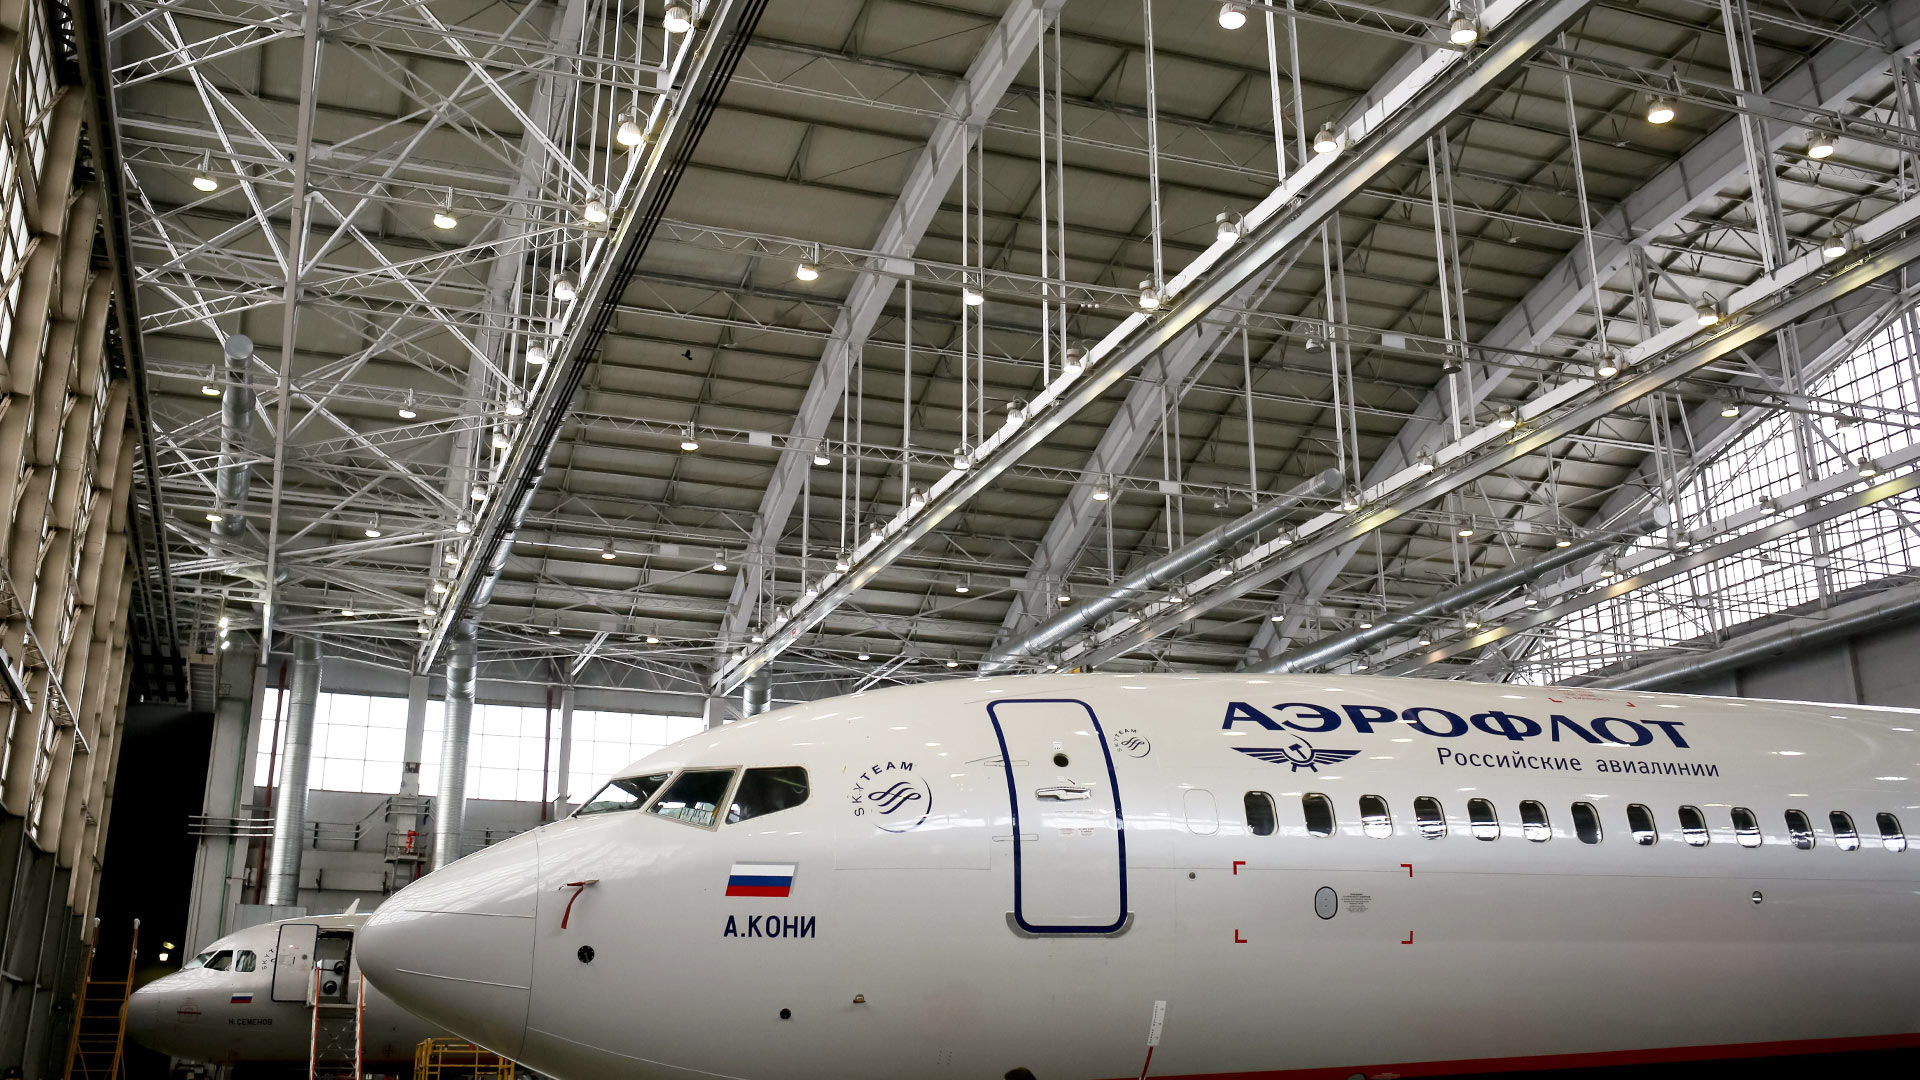 Eine Boeing 737-800 von Aeroflot im Wartungszentrum. | picture alliance / Russian Look